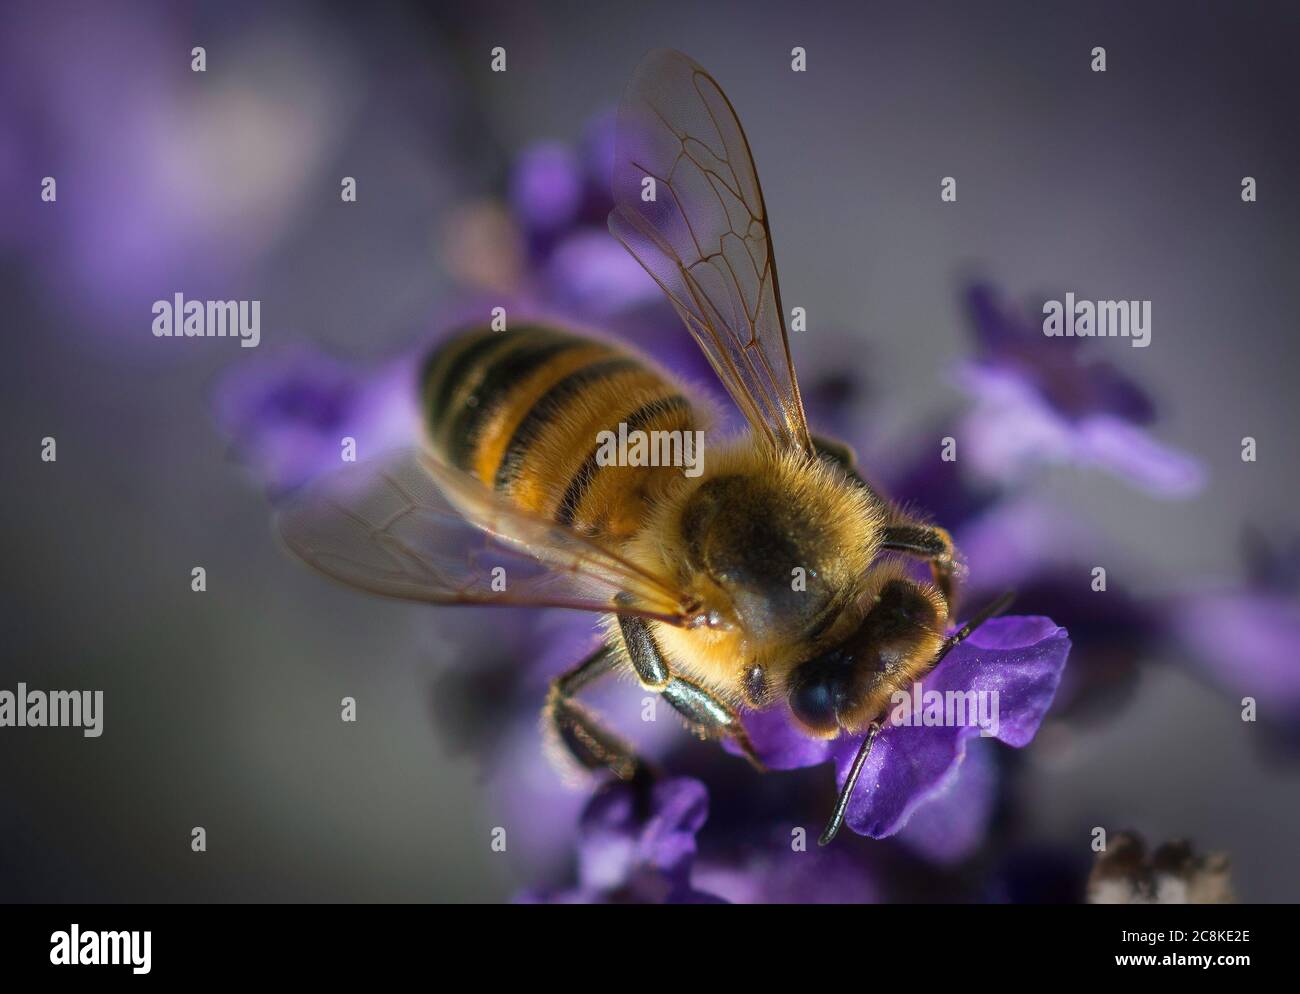 Honey bee on Lavender Stock Photo